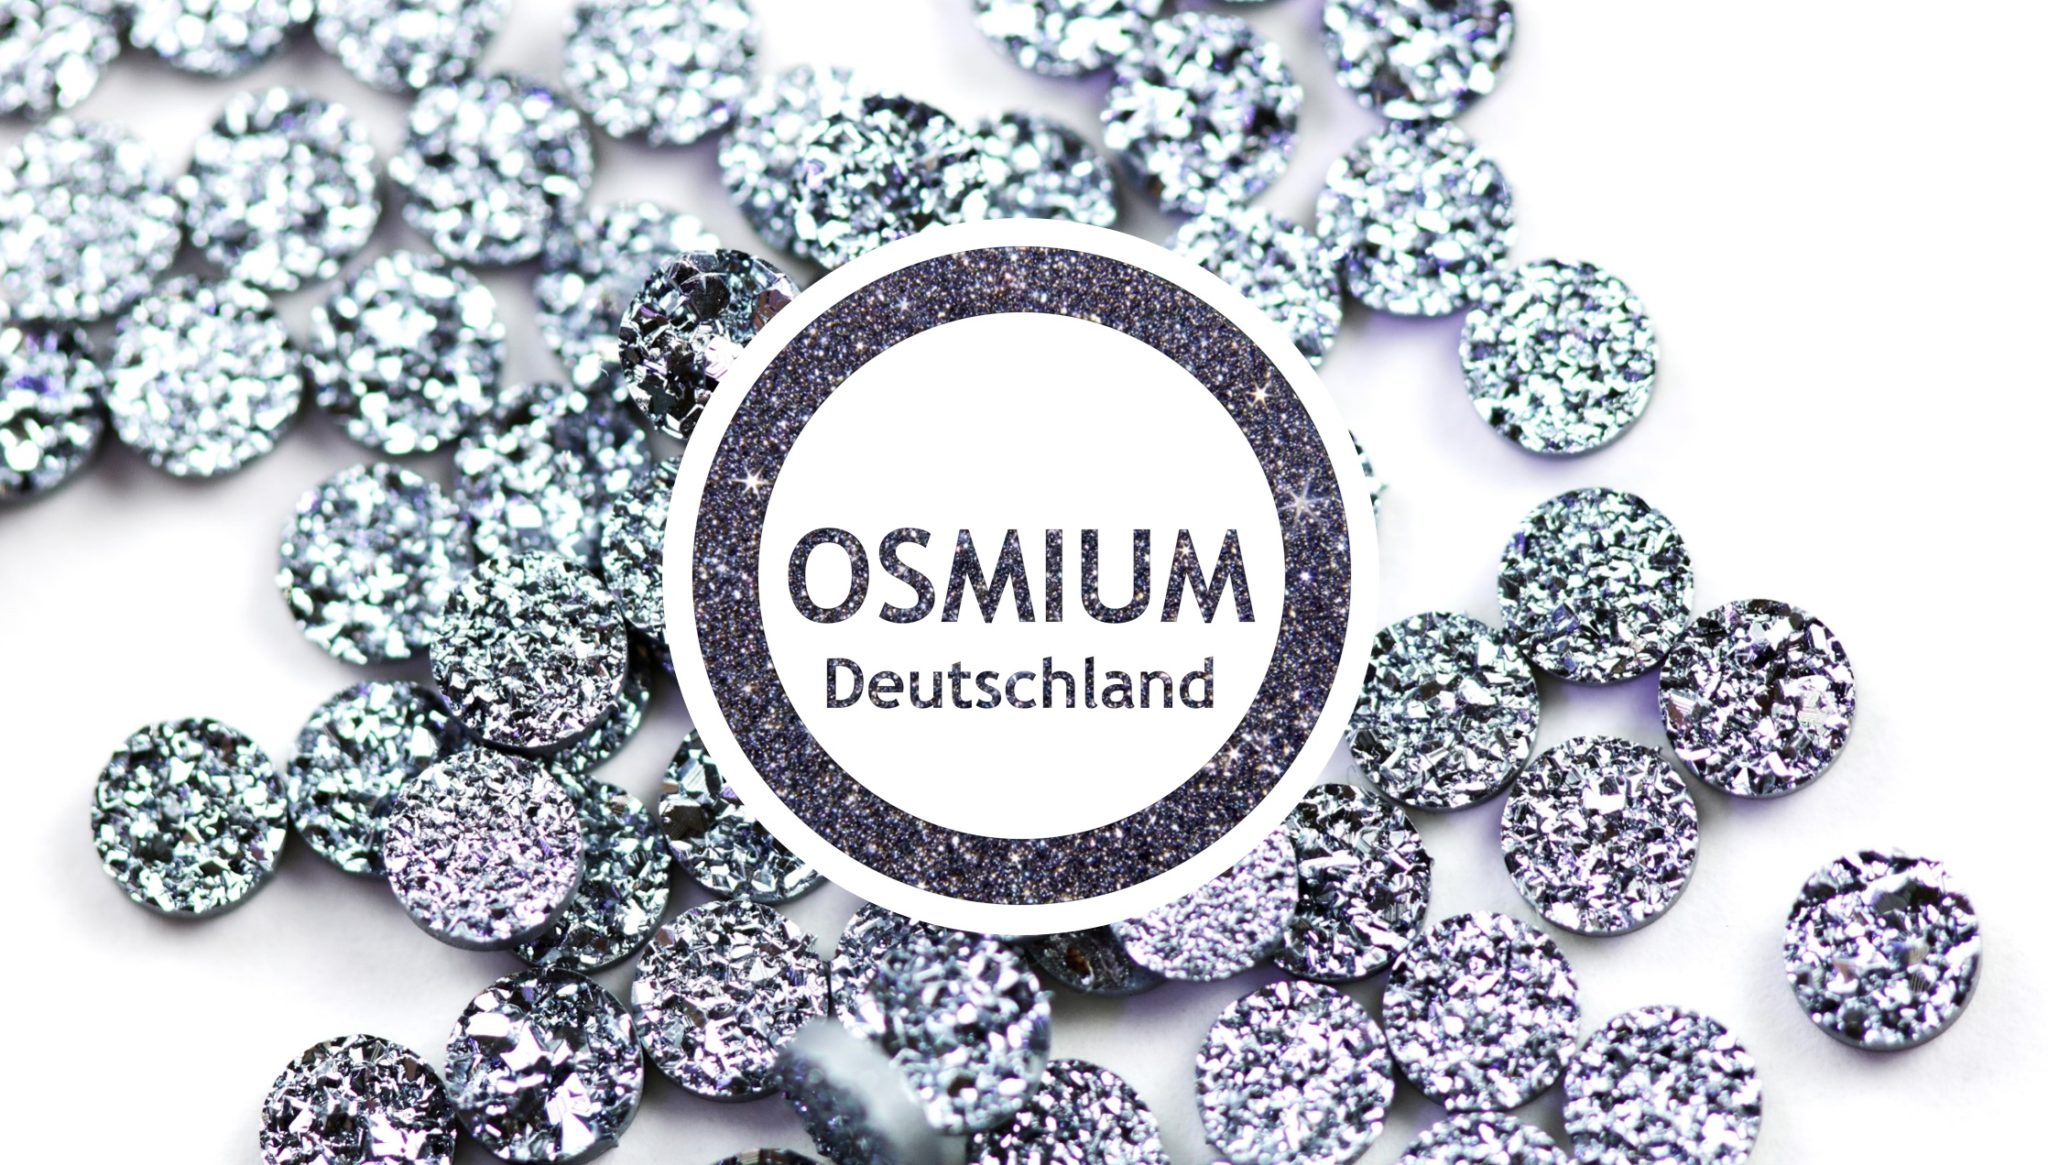 Osmium Deutschland zeigt Diamonds aus dem Edelmetall in seinem Logo.